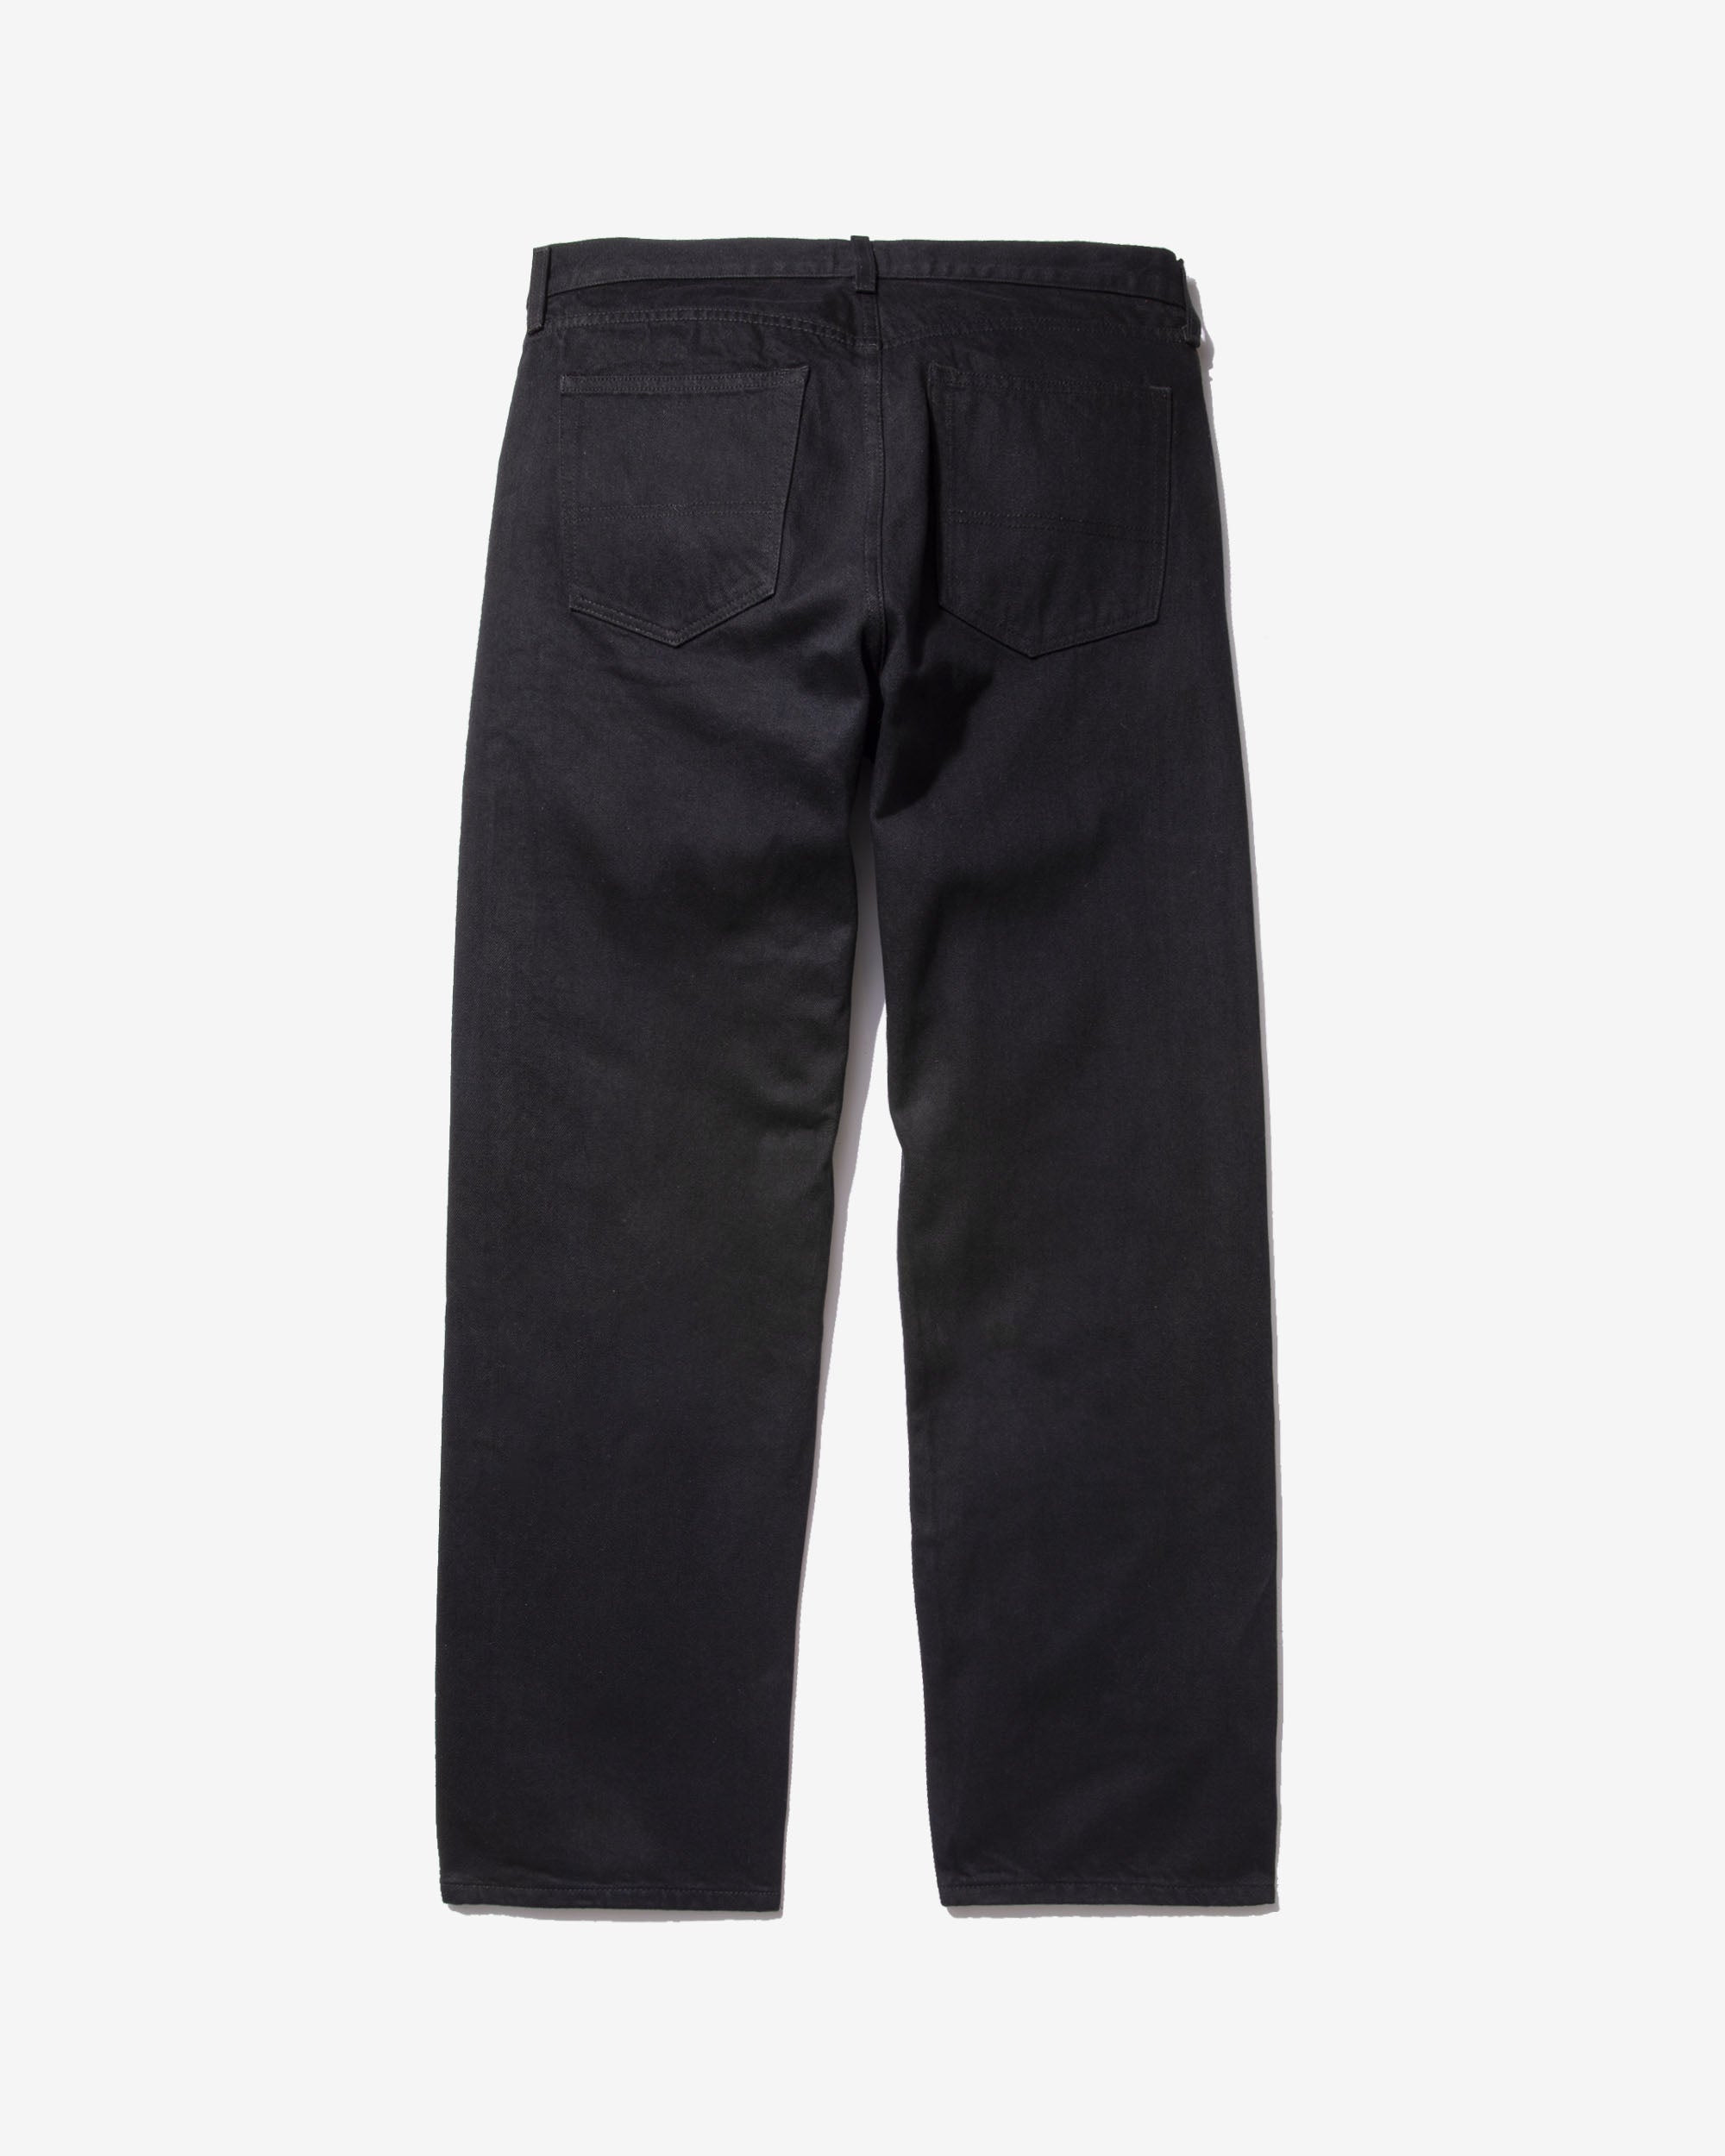 MONCHAUX vintage Pleated Denim Trousers Slim fit Mens size 40 | eBay